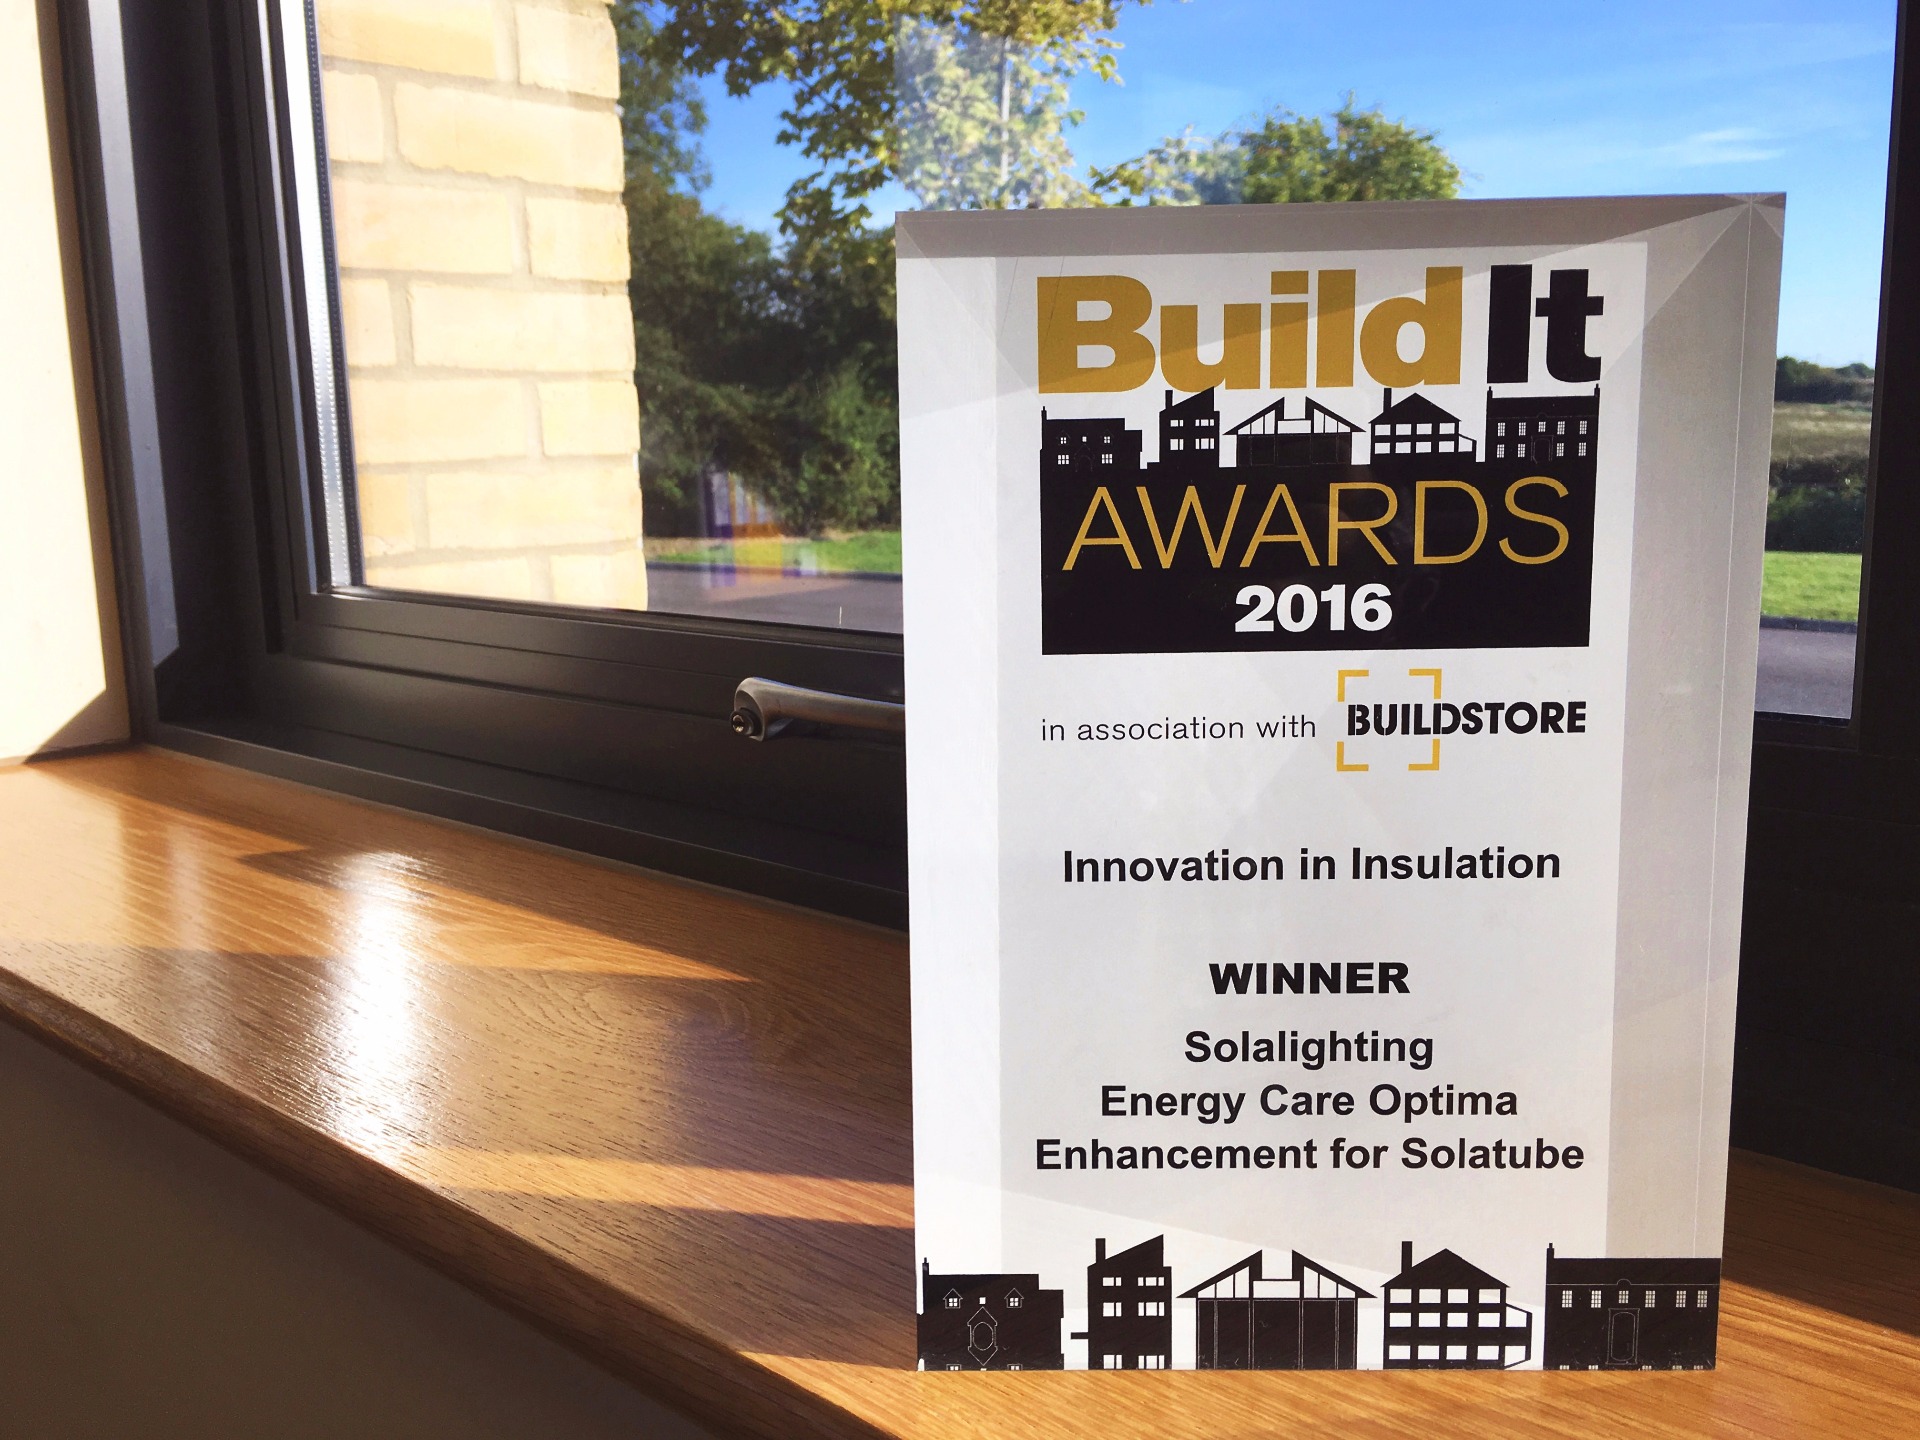 Build It Awards 2016 - Innovation in Insulation award